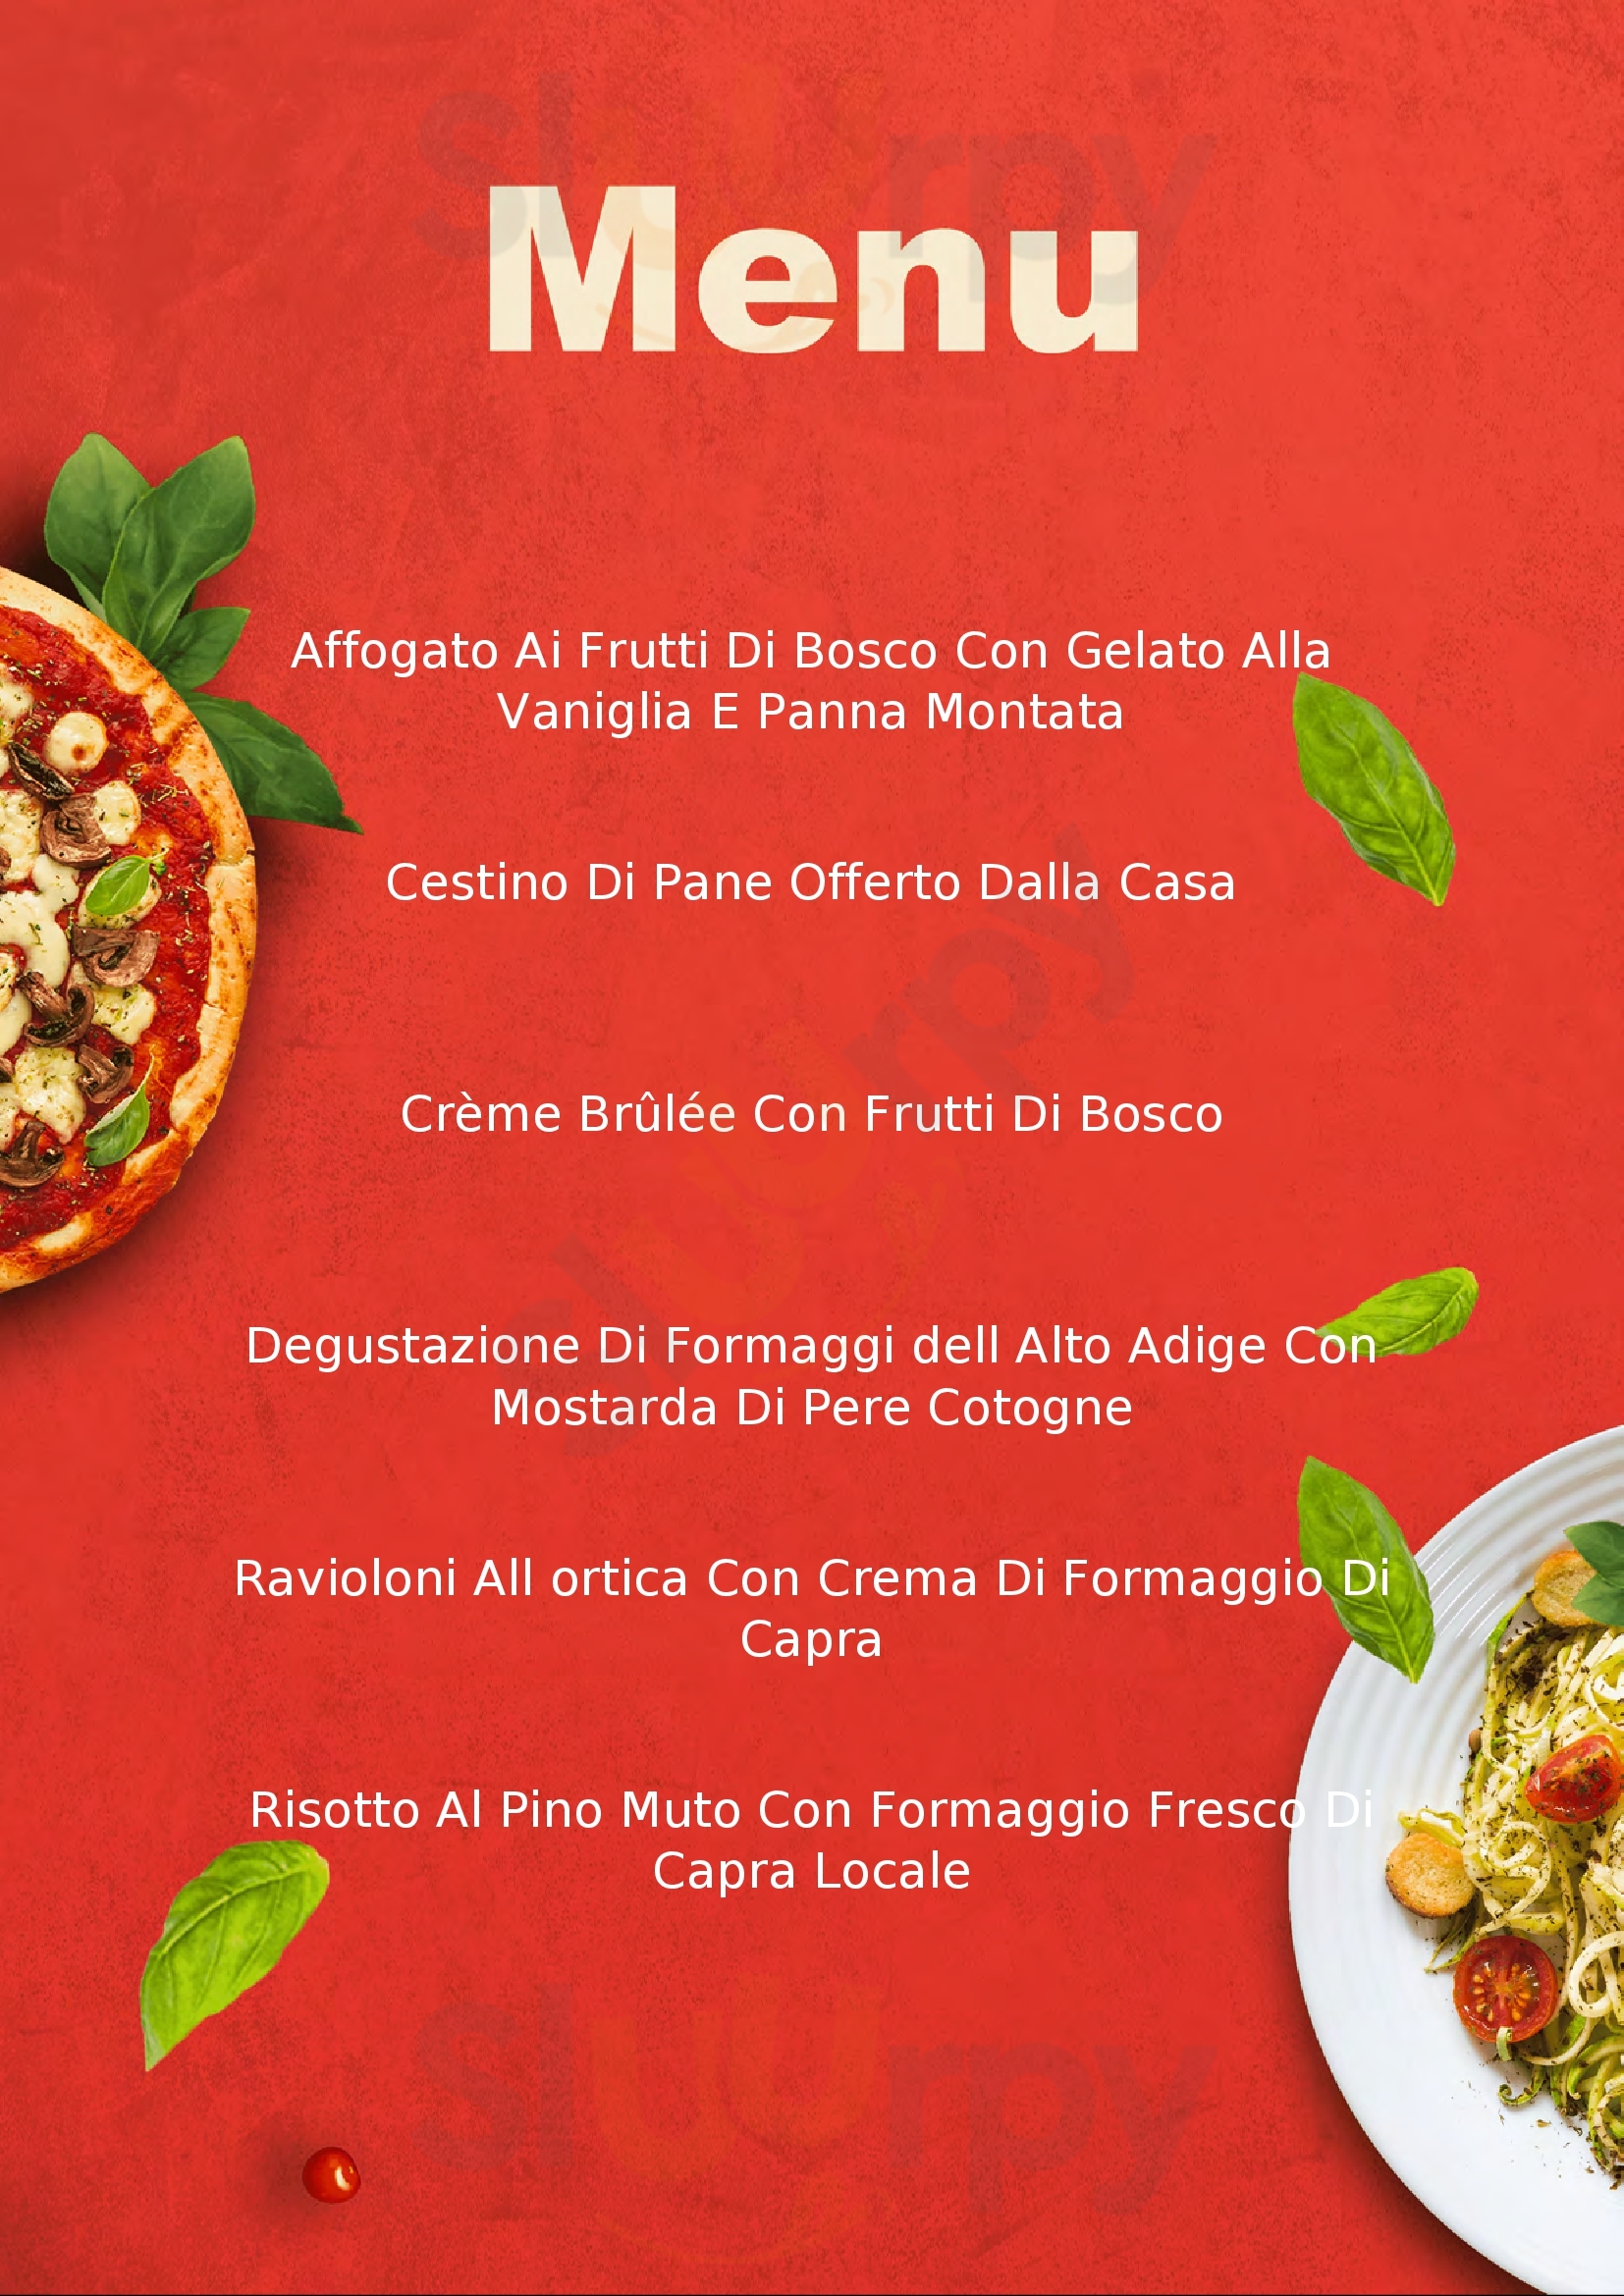 Restaurant Concordia Ortisei menù 1 pagina